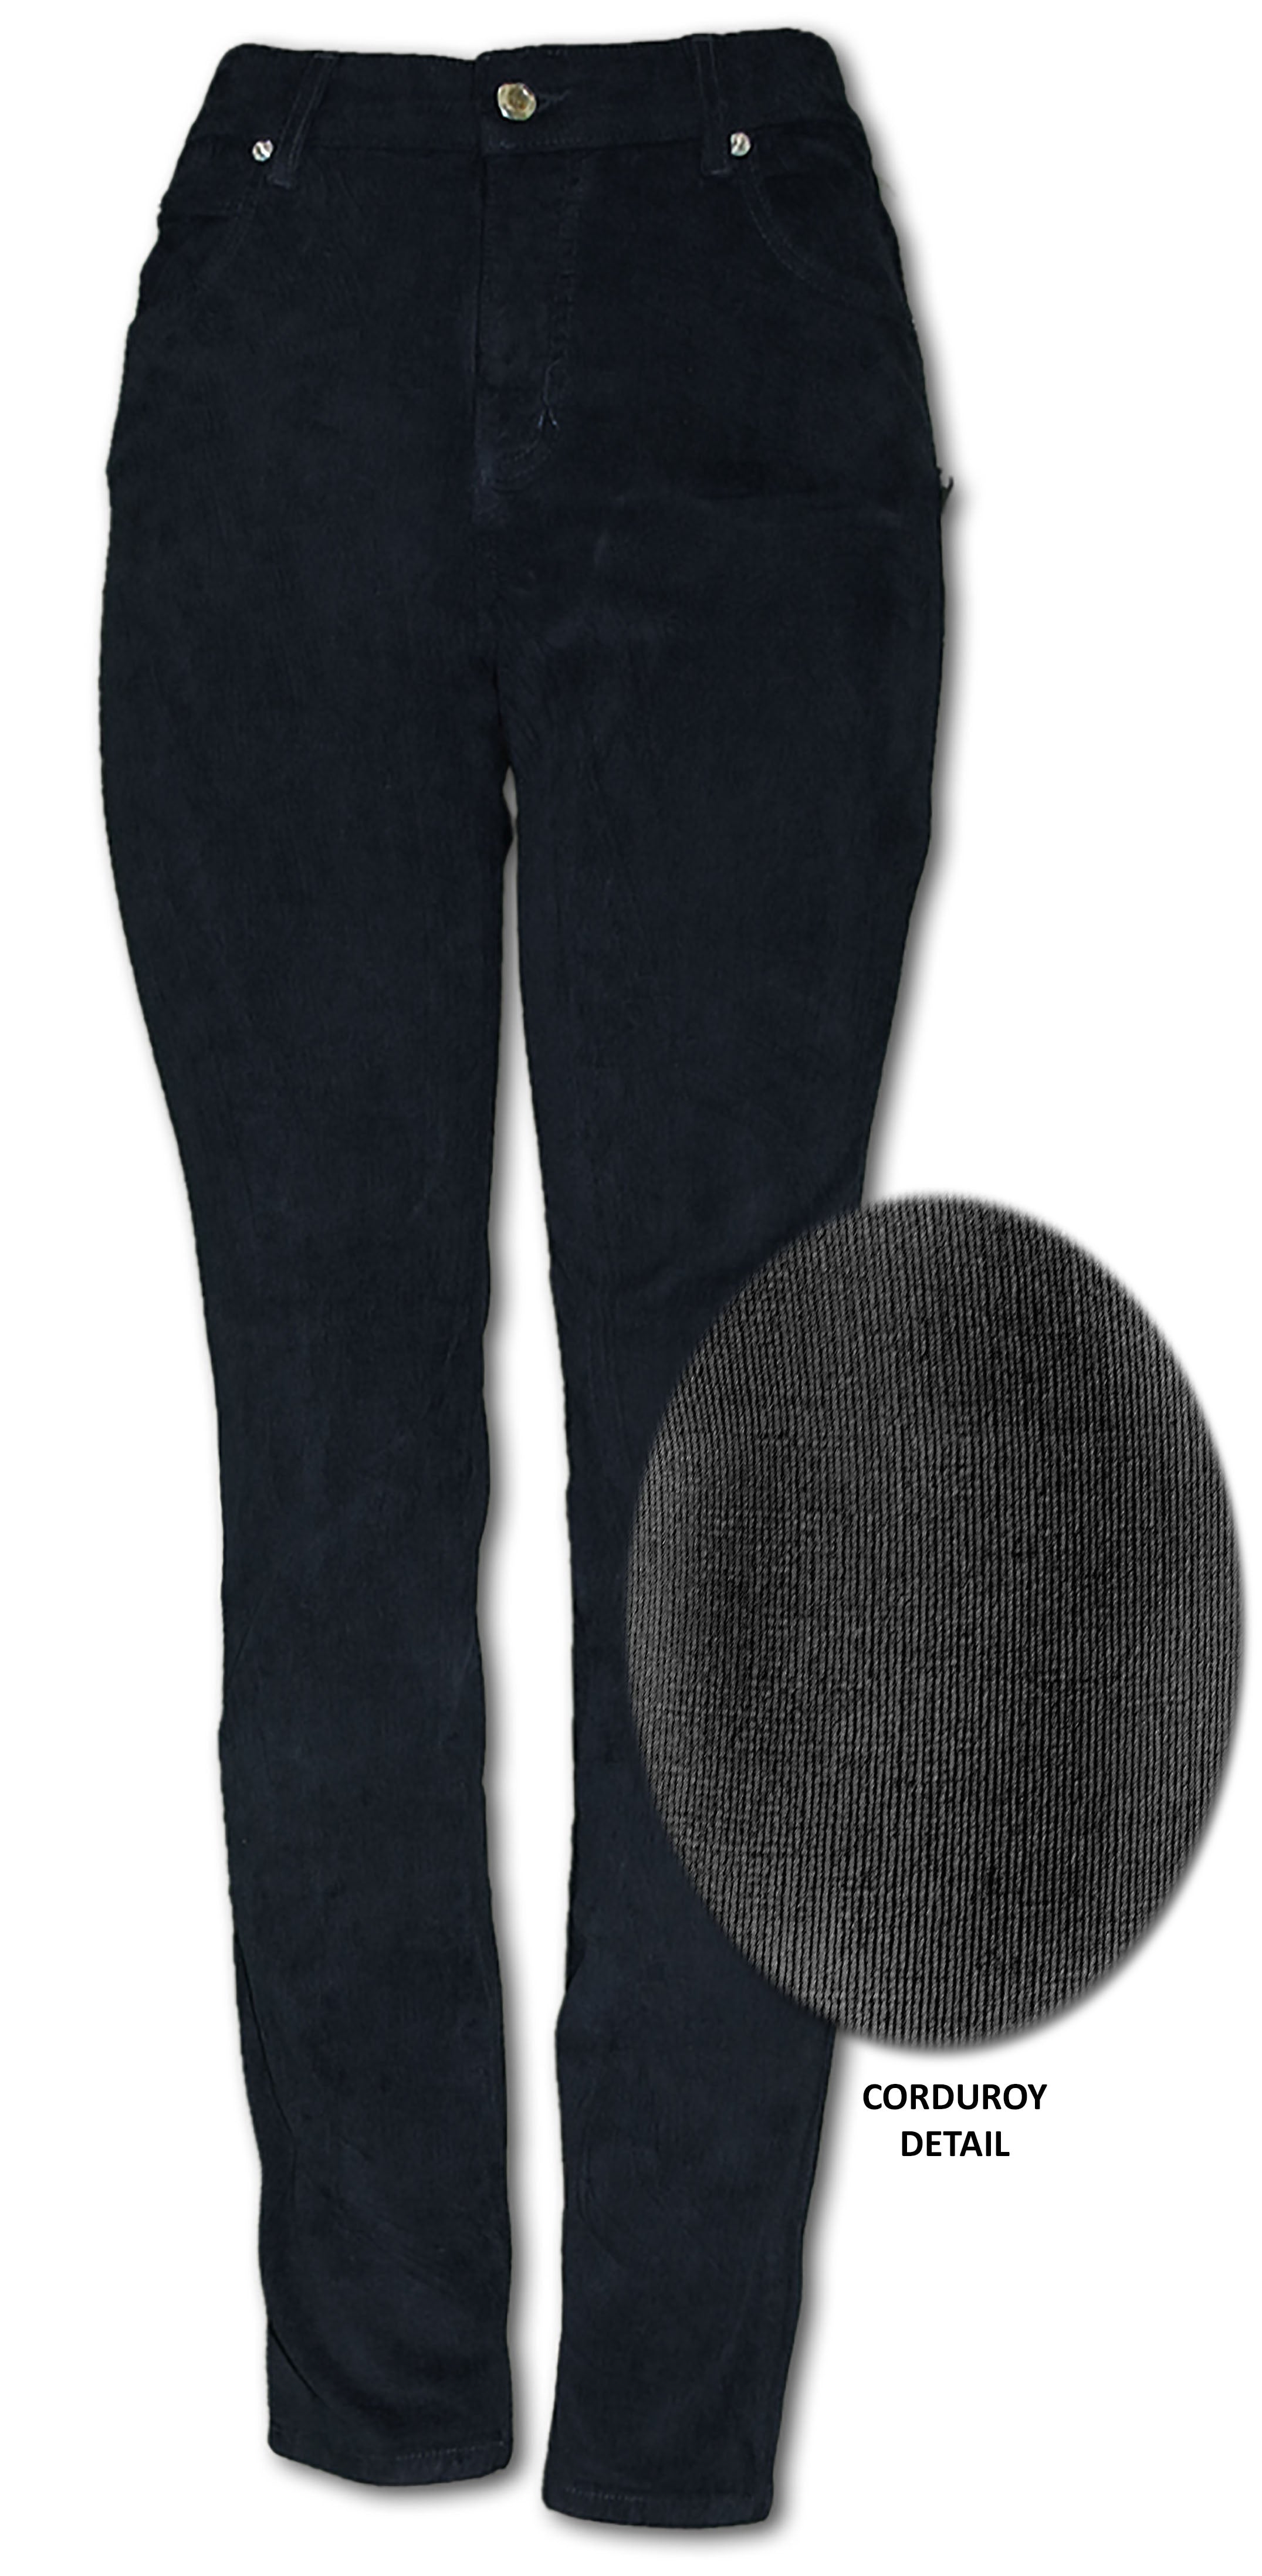 TrueSlim Black Corduroy Jeggings – TrueSlim Jeans